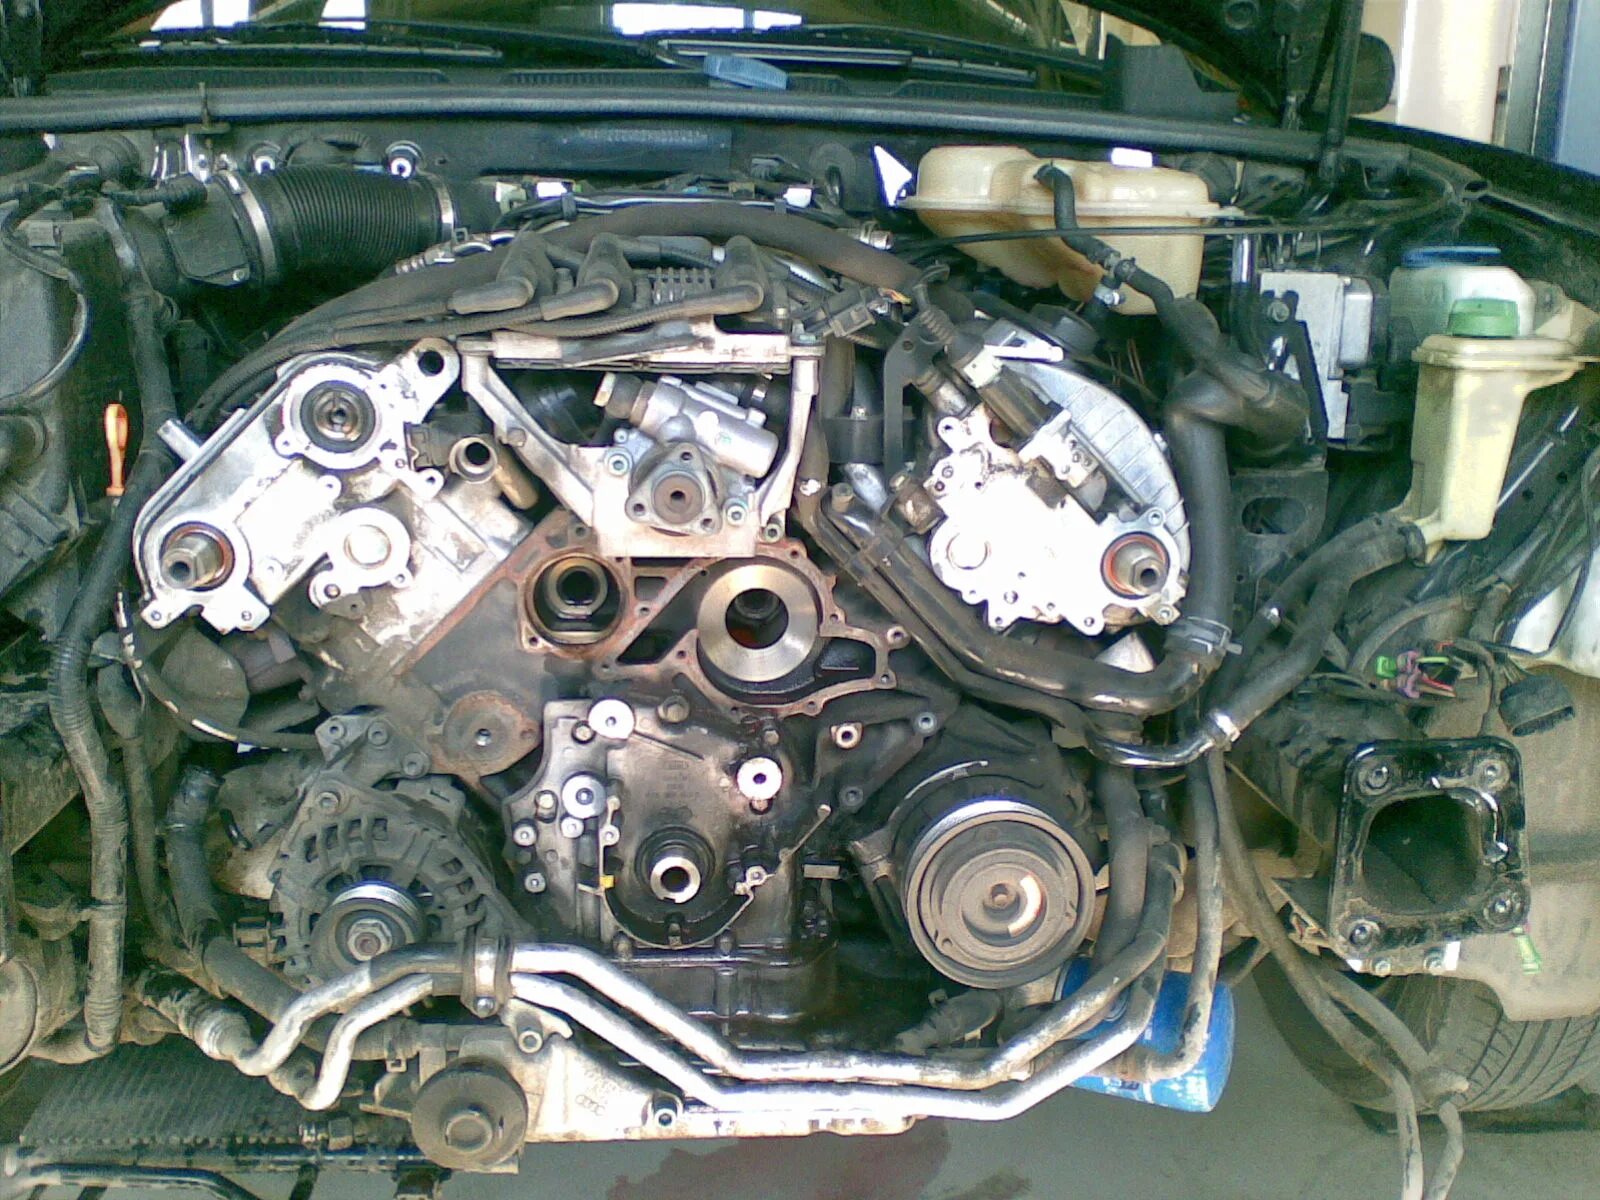 Двигателя ауди а6 с5 2.4. Система охлаждения Ауди а6 с5 2.4. Система охлаждения Audi a6 c5 2.7. Ауди а6 2.5 дизель система охлаждения. Audi a6 v6 2.8.